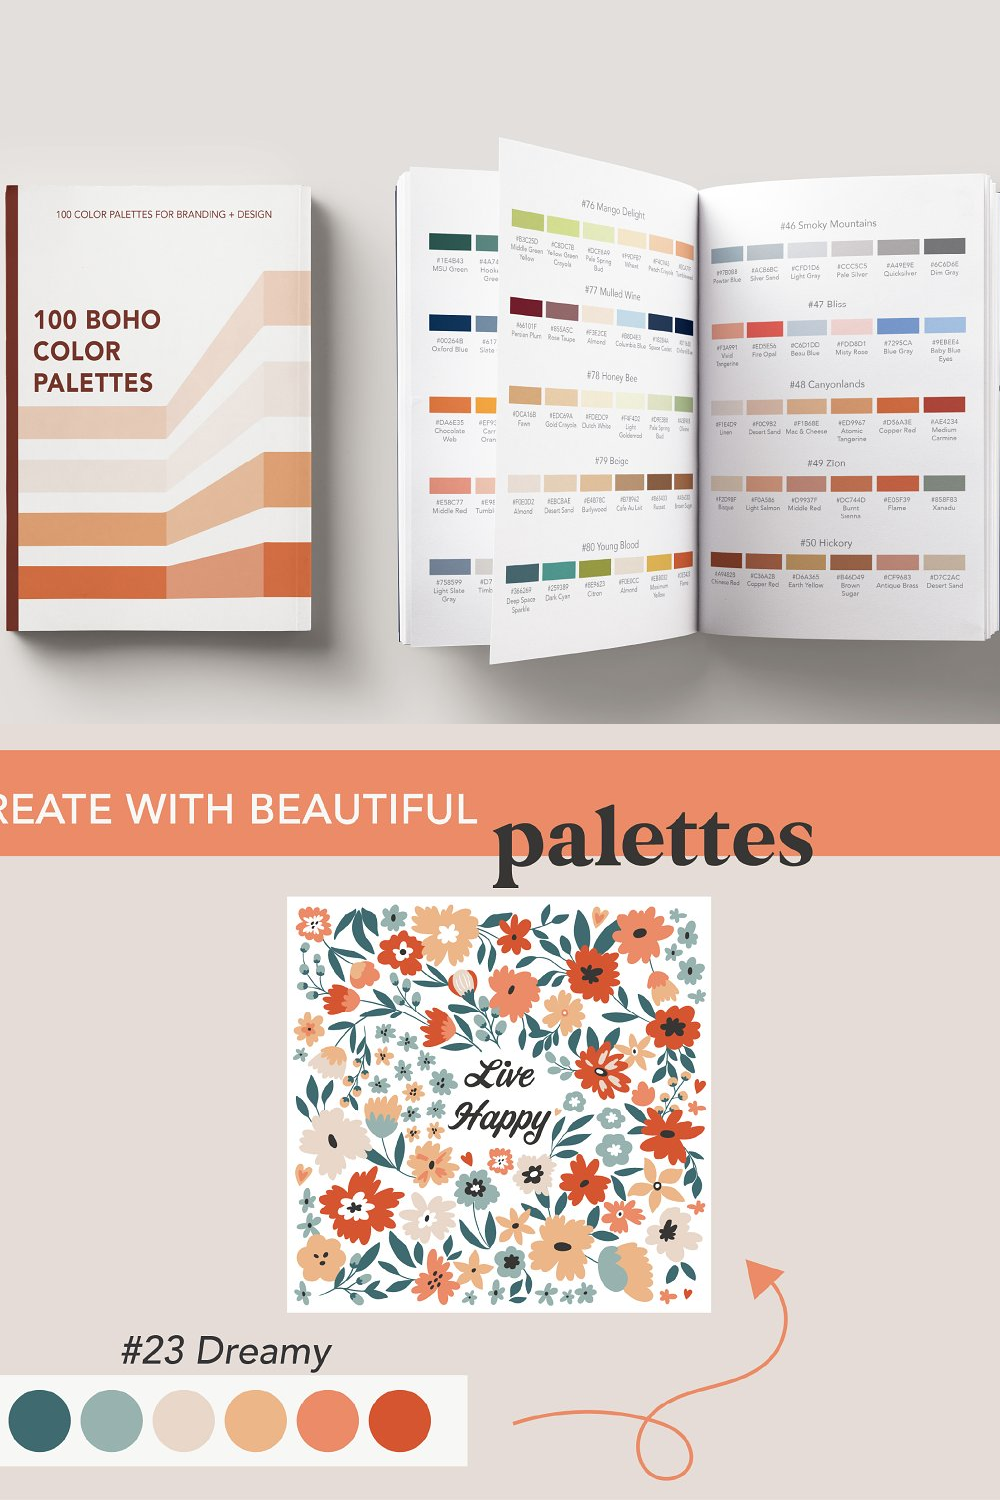 Illustrations boho color palettes for branding of pinterest.